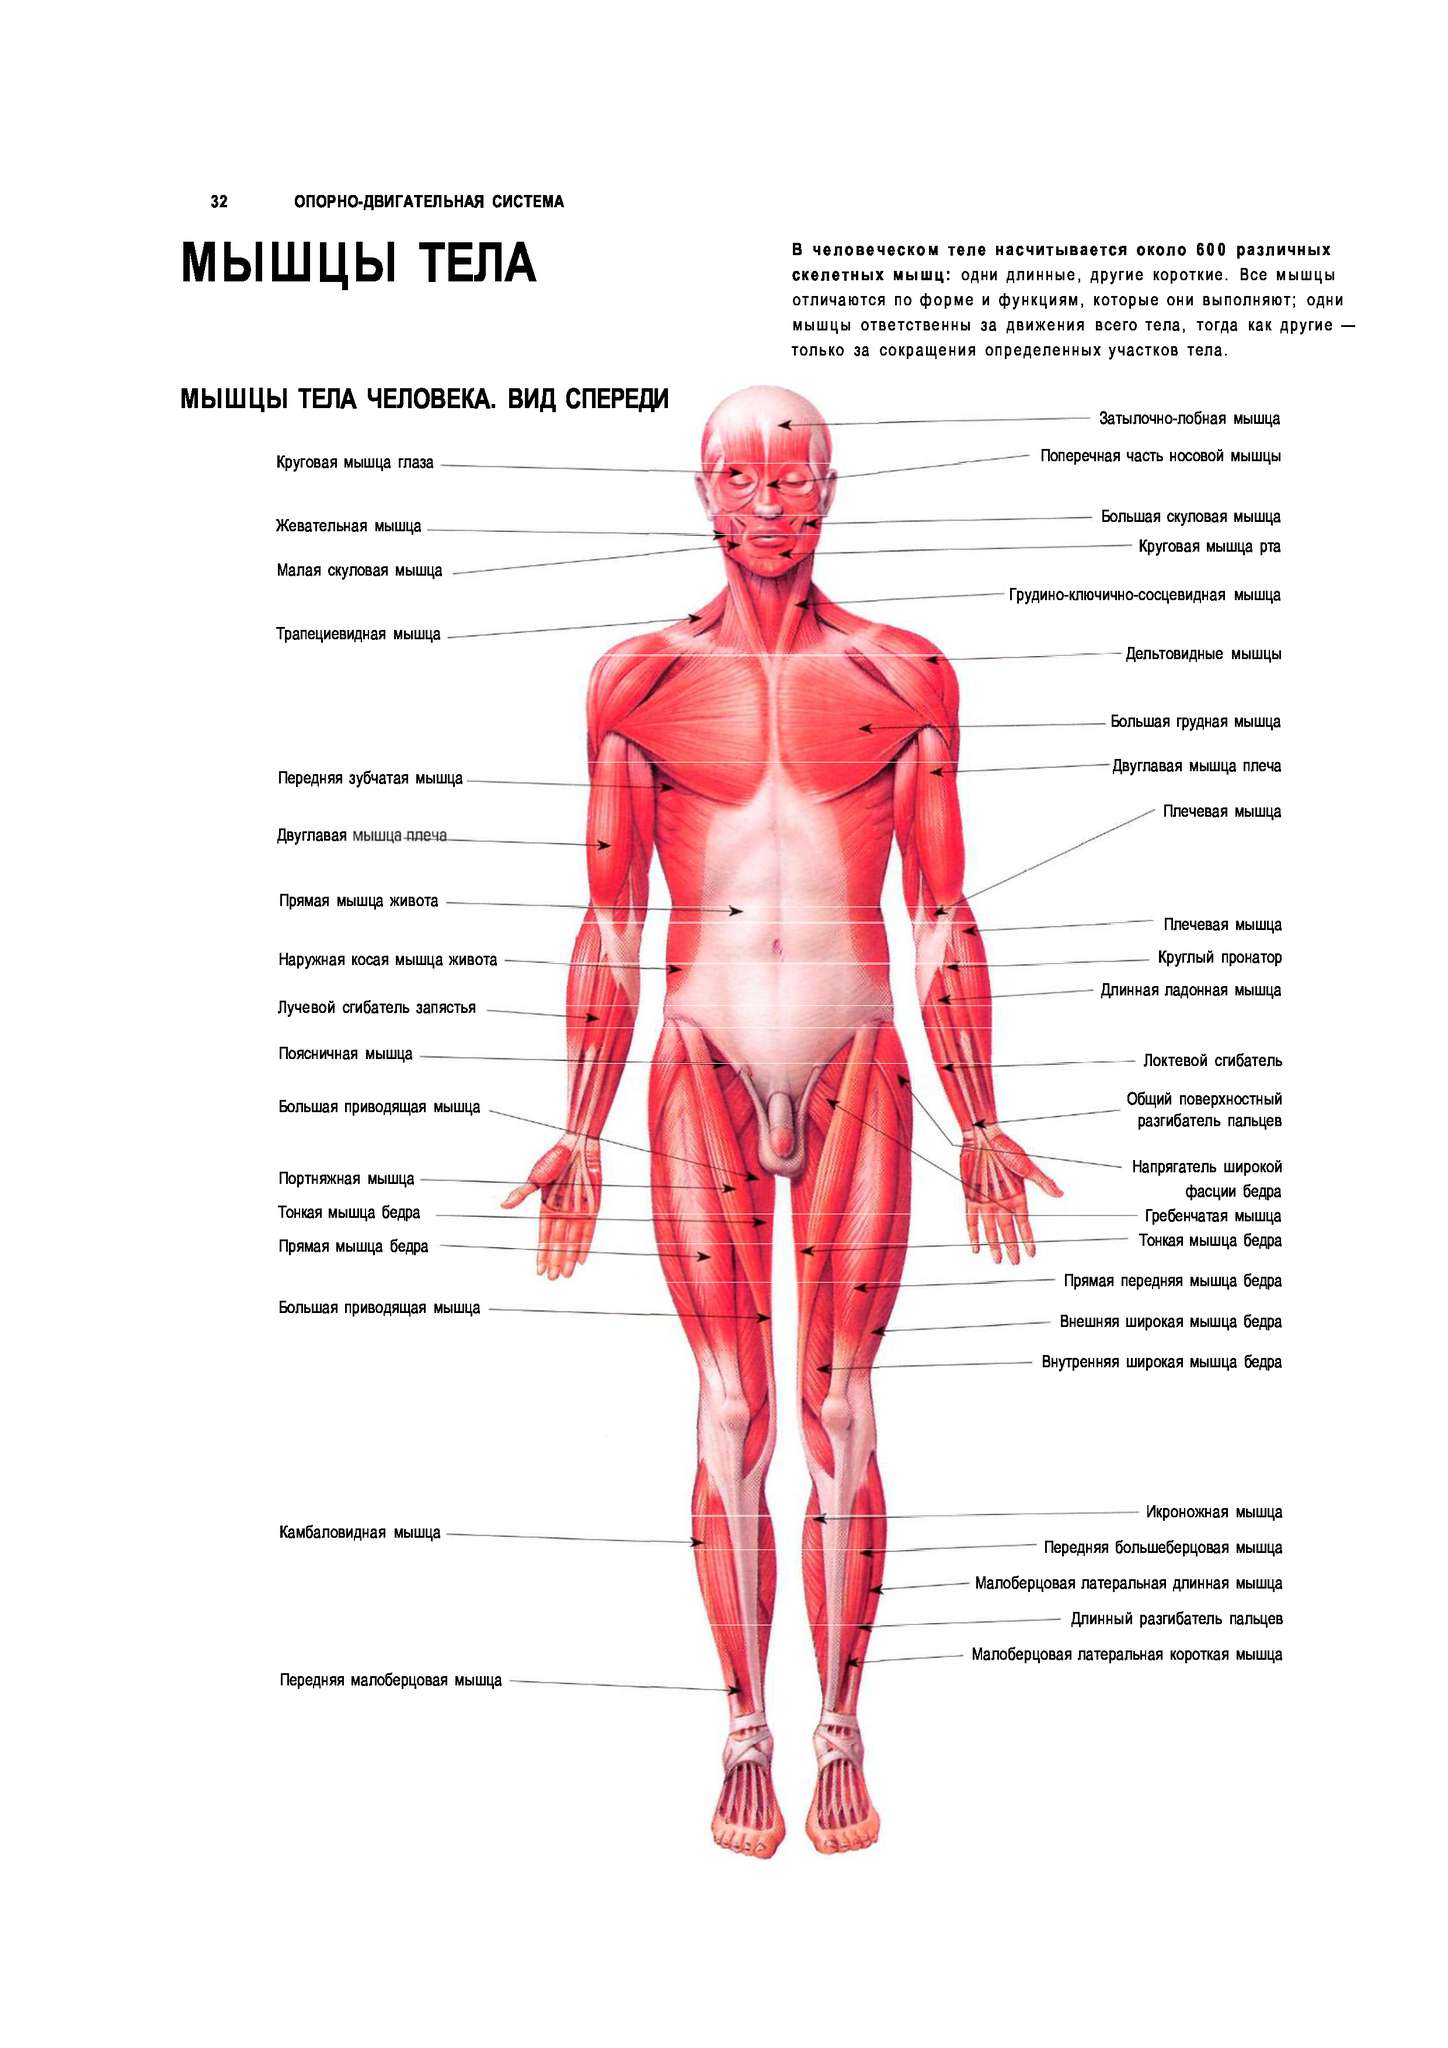 Название организма человека. Плакат мышцы человека. Мышцы термины.